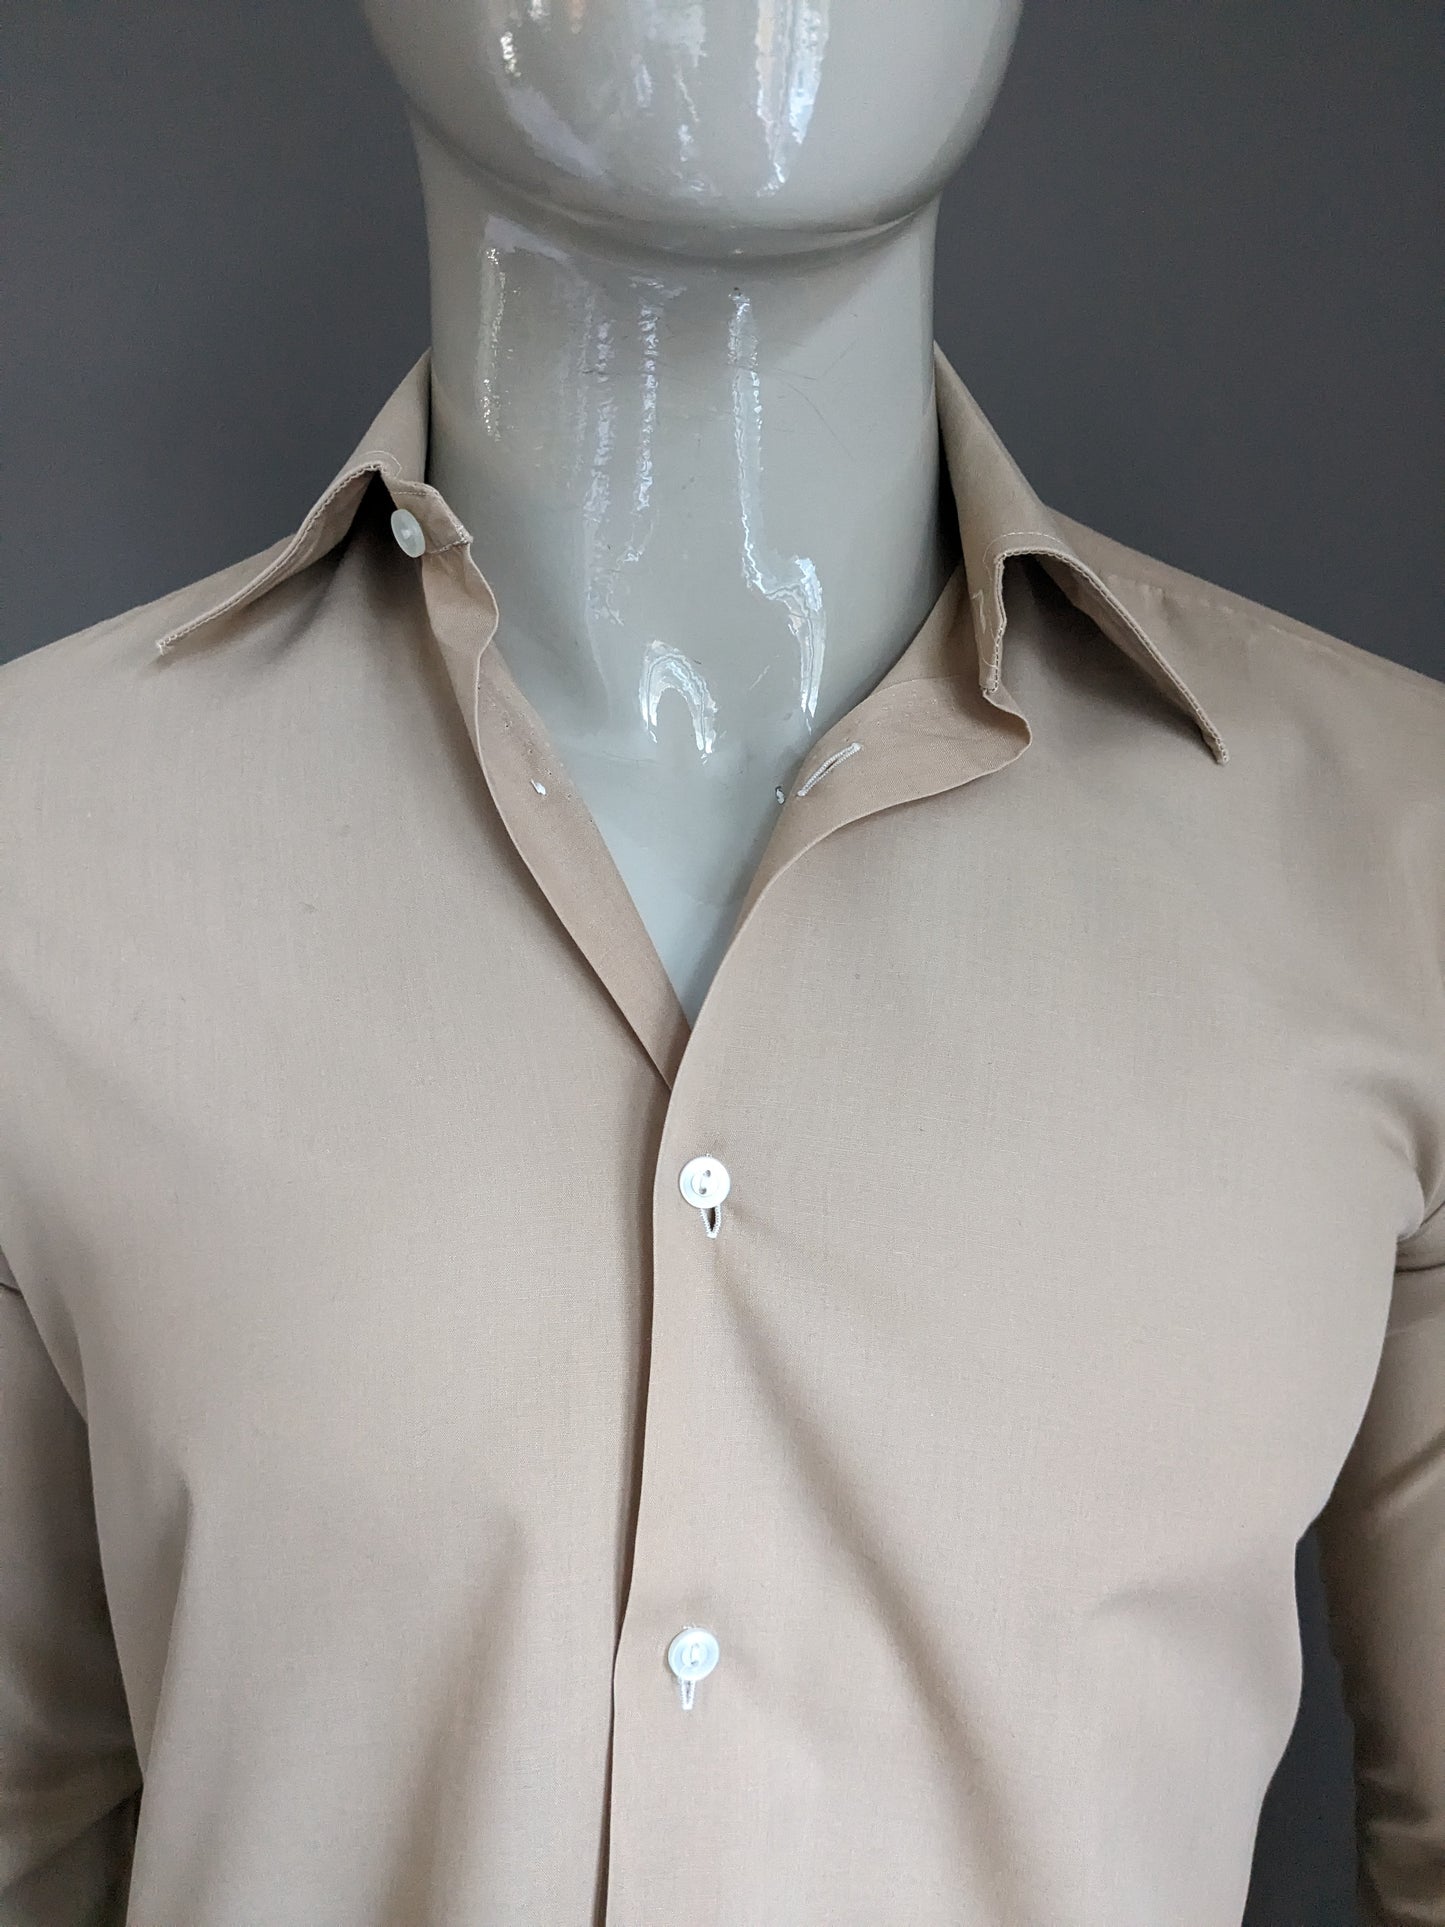 Camicia vintage Tootal degli anni '70 con colletto punti. Colore marrone chiaro. Taglia M.